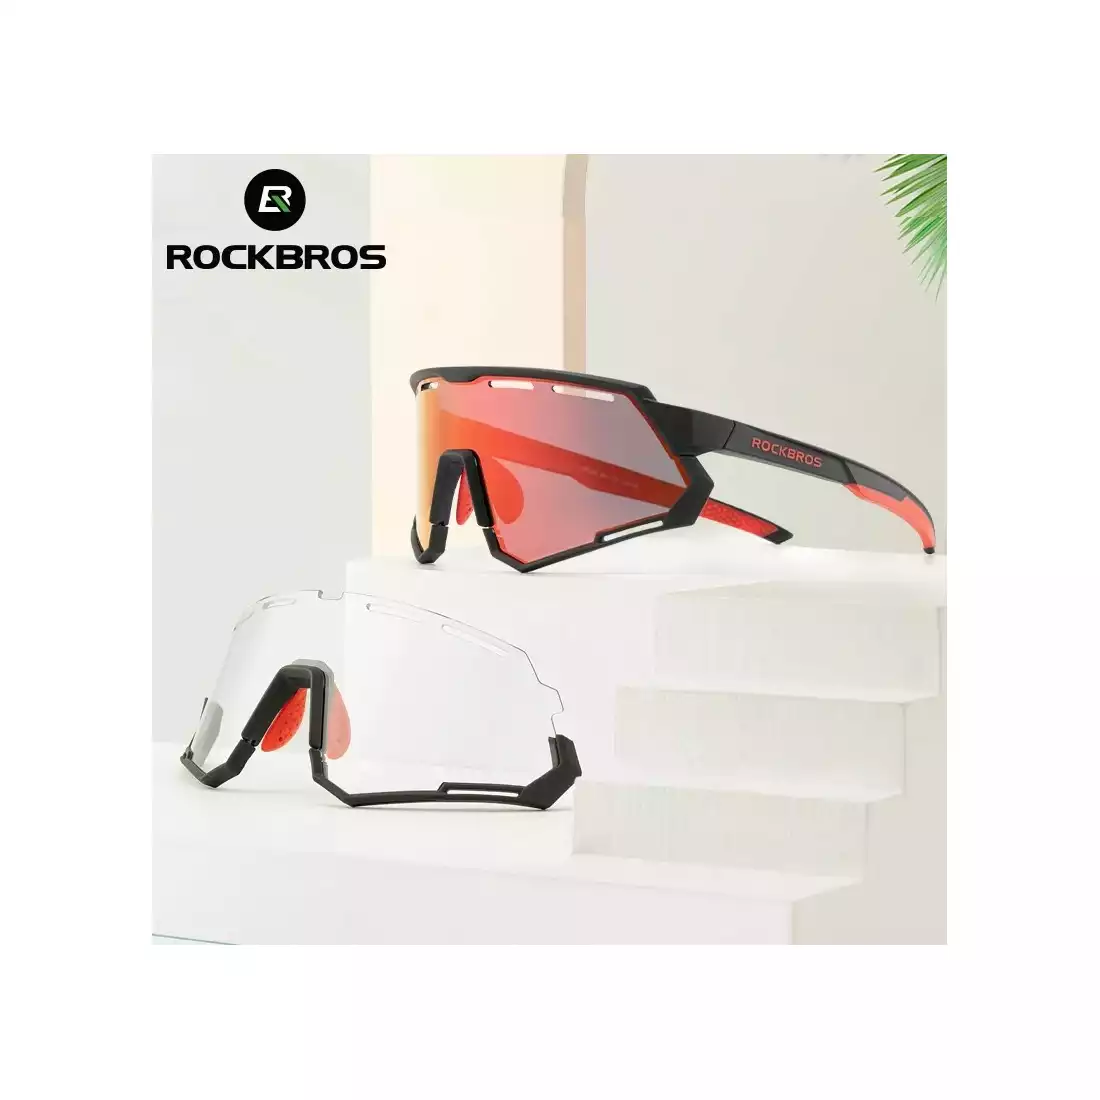 Rockbros 14210004001 Okuliare na bicykel / šport, polarizované, fotochromatické, 2 vymeniteľných šošoviek, čierne a červené